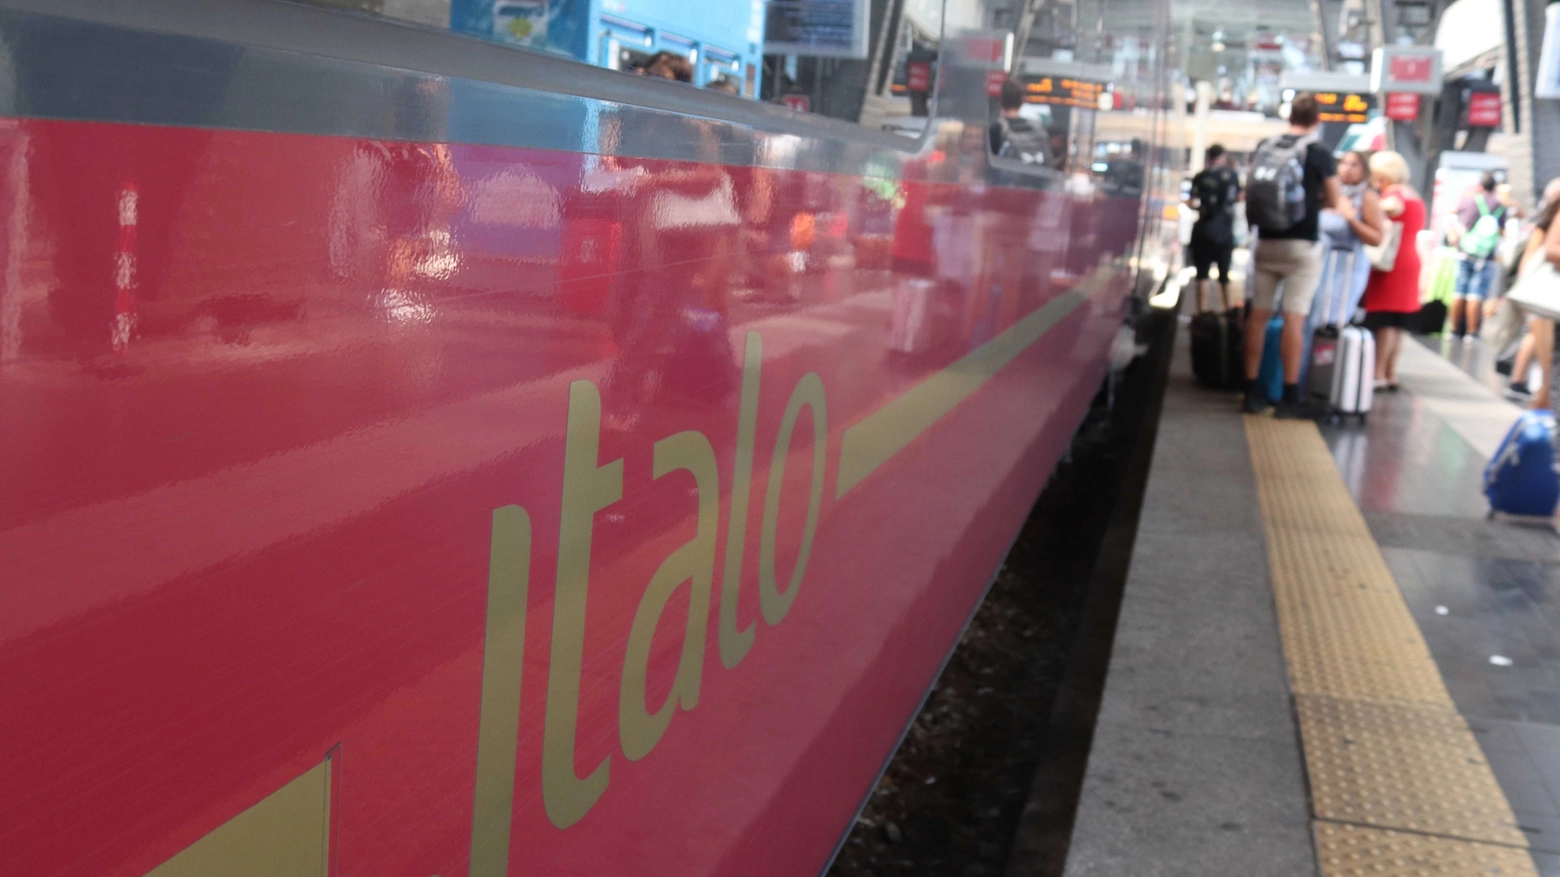 L'episodio è avvenuto sul treno Italo Milano-Napoli